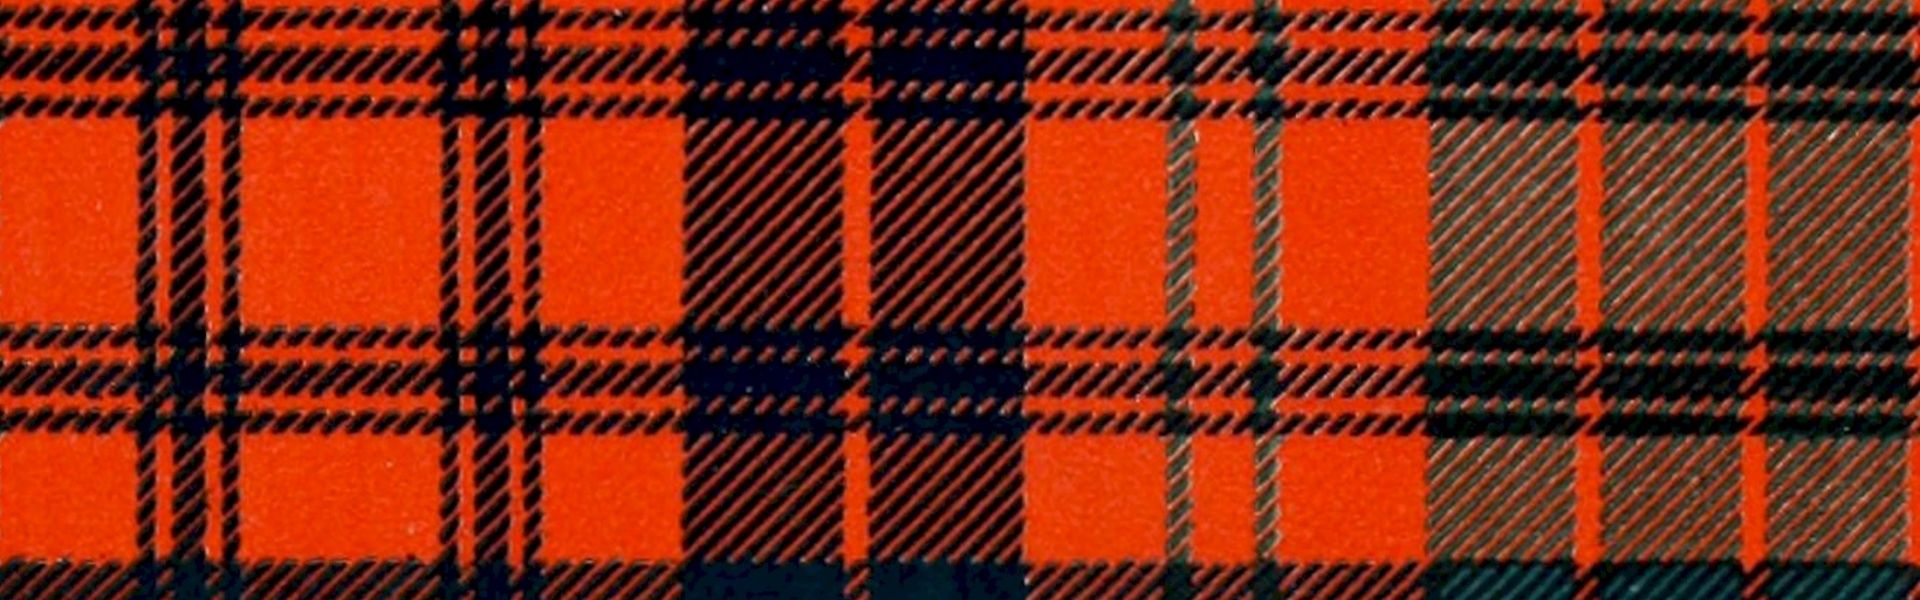 Schotse ruit bij het versje 'Mac Nuggets' van Paul Schrijft